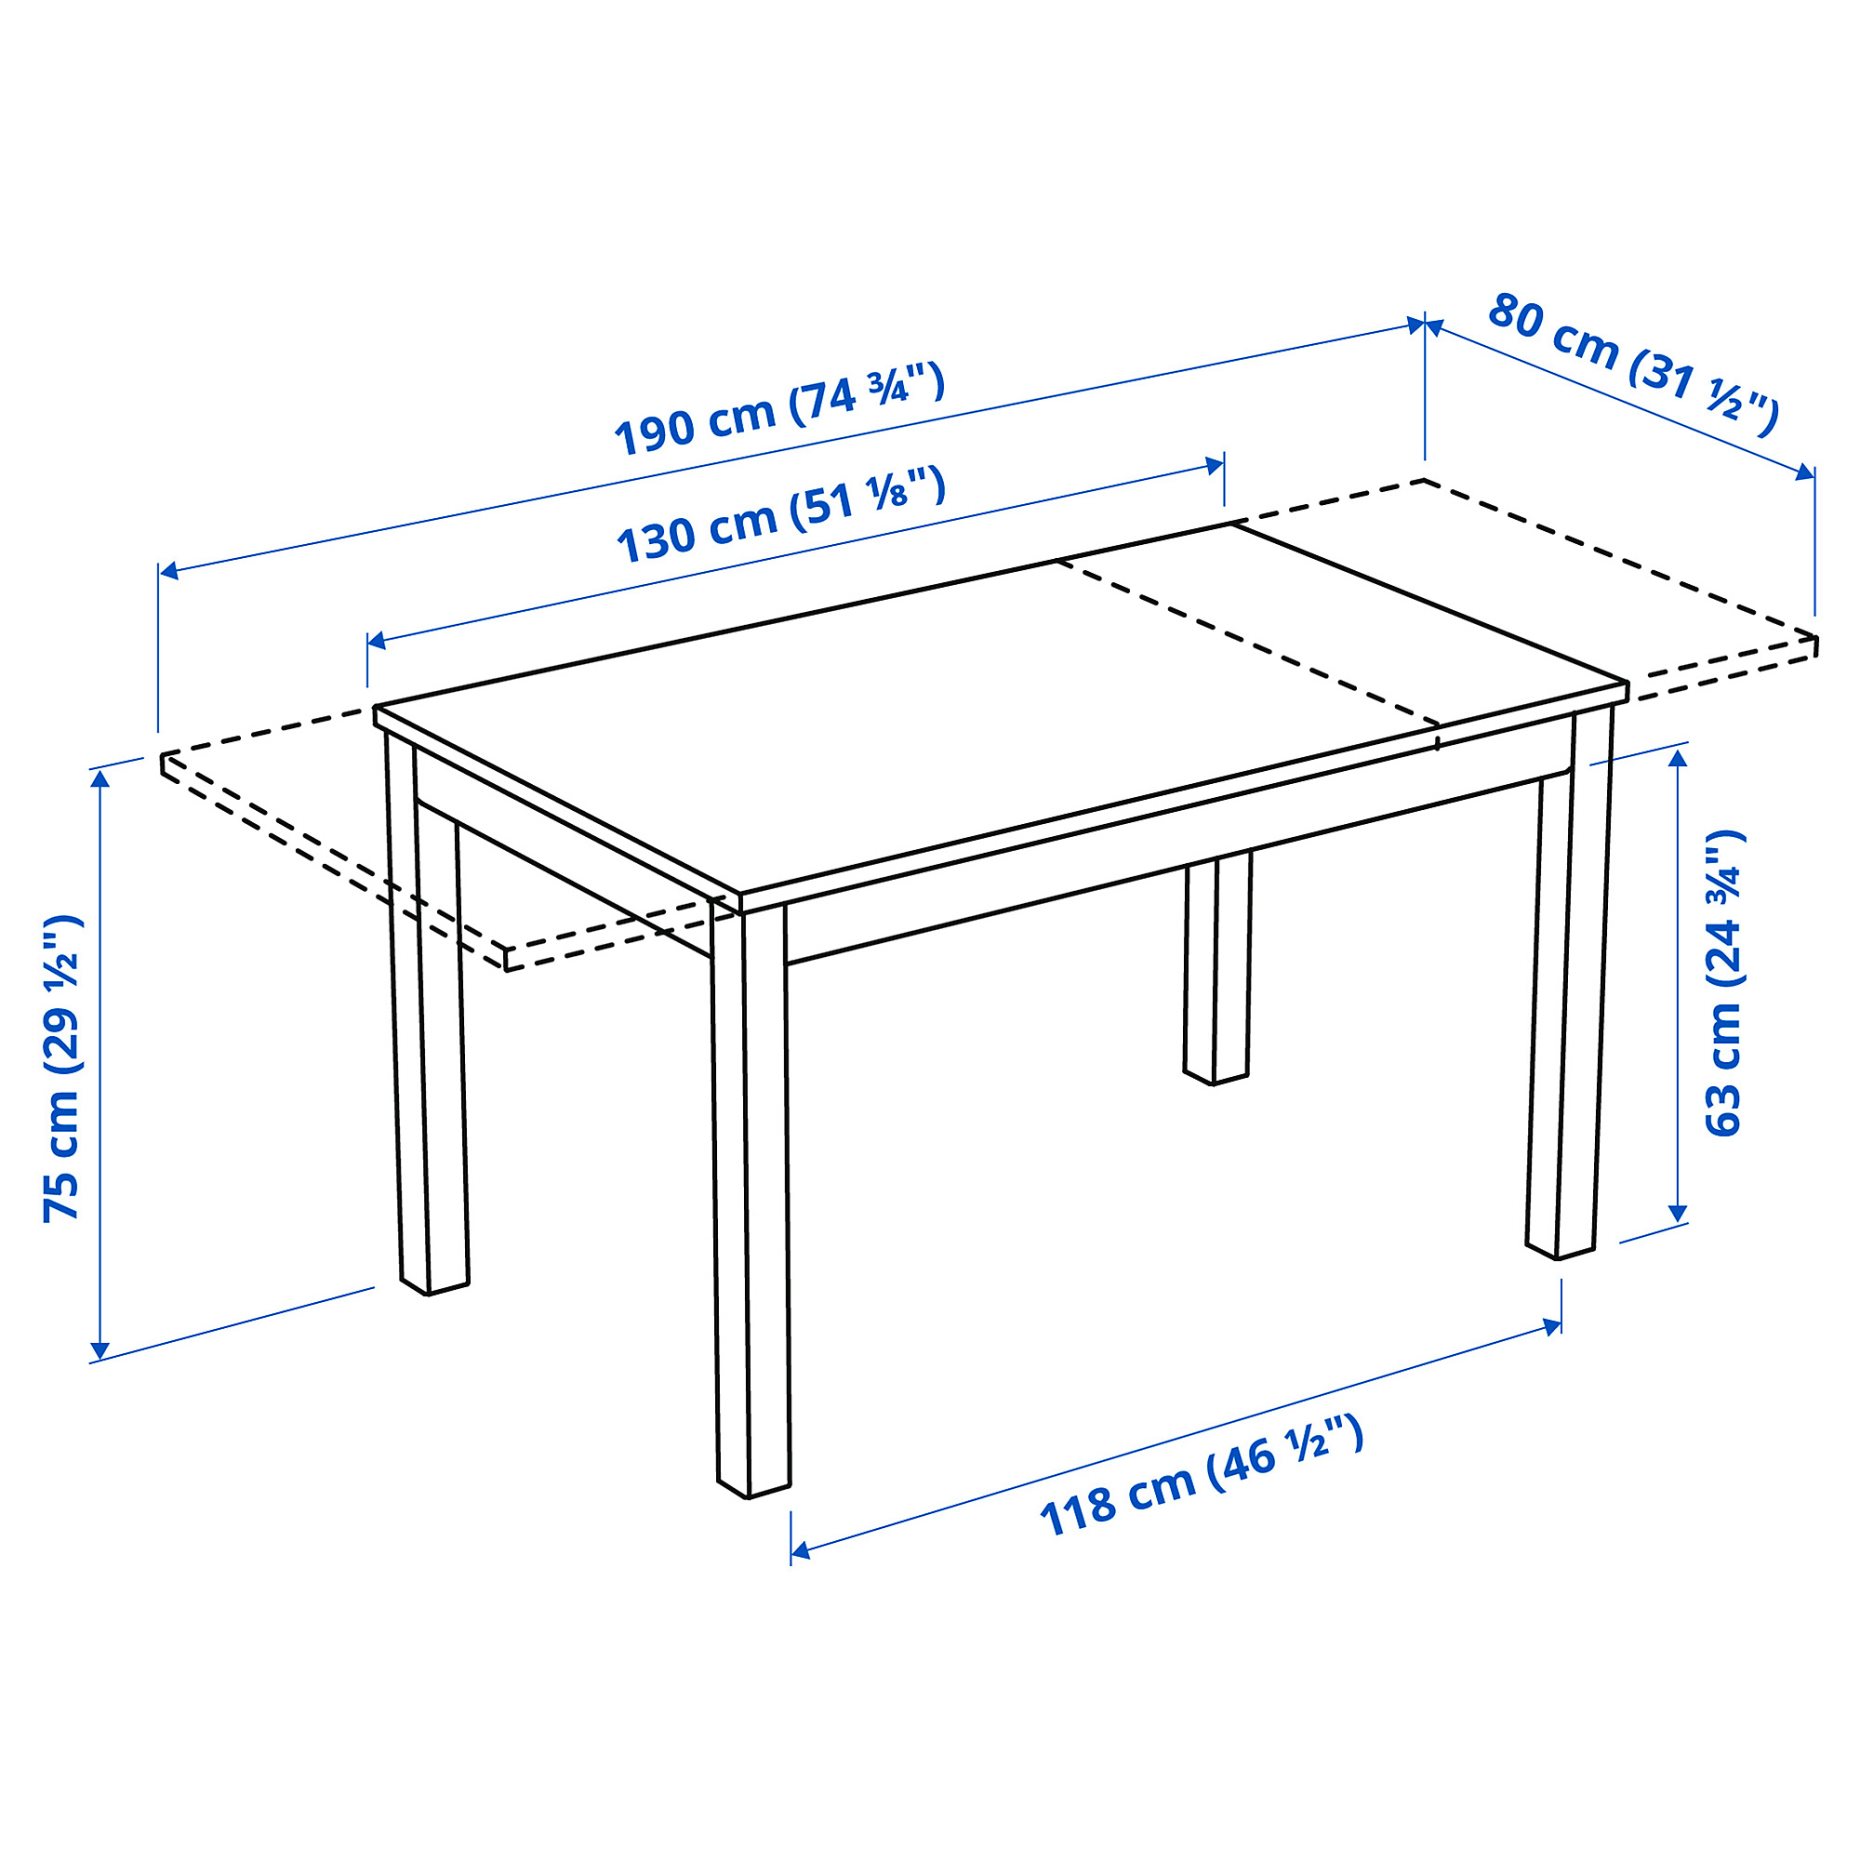 LANEBERG, extendable table, 604.161.38